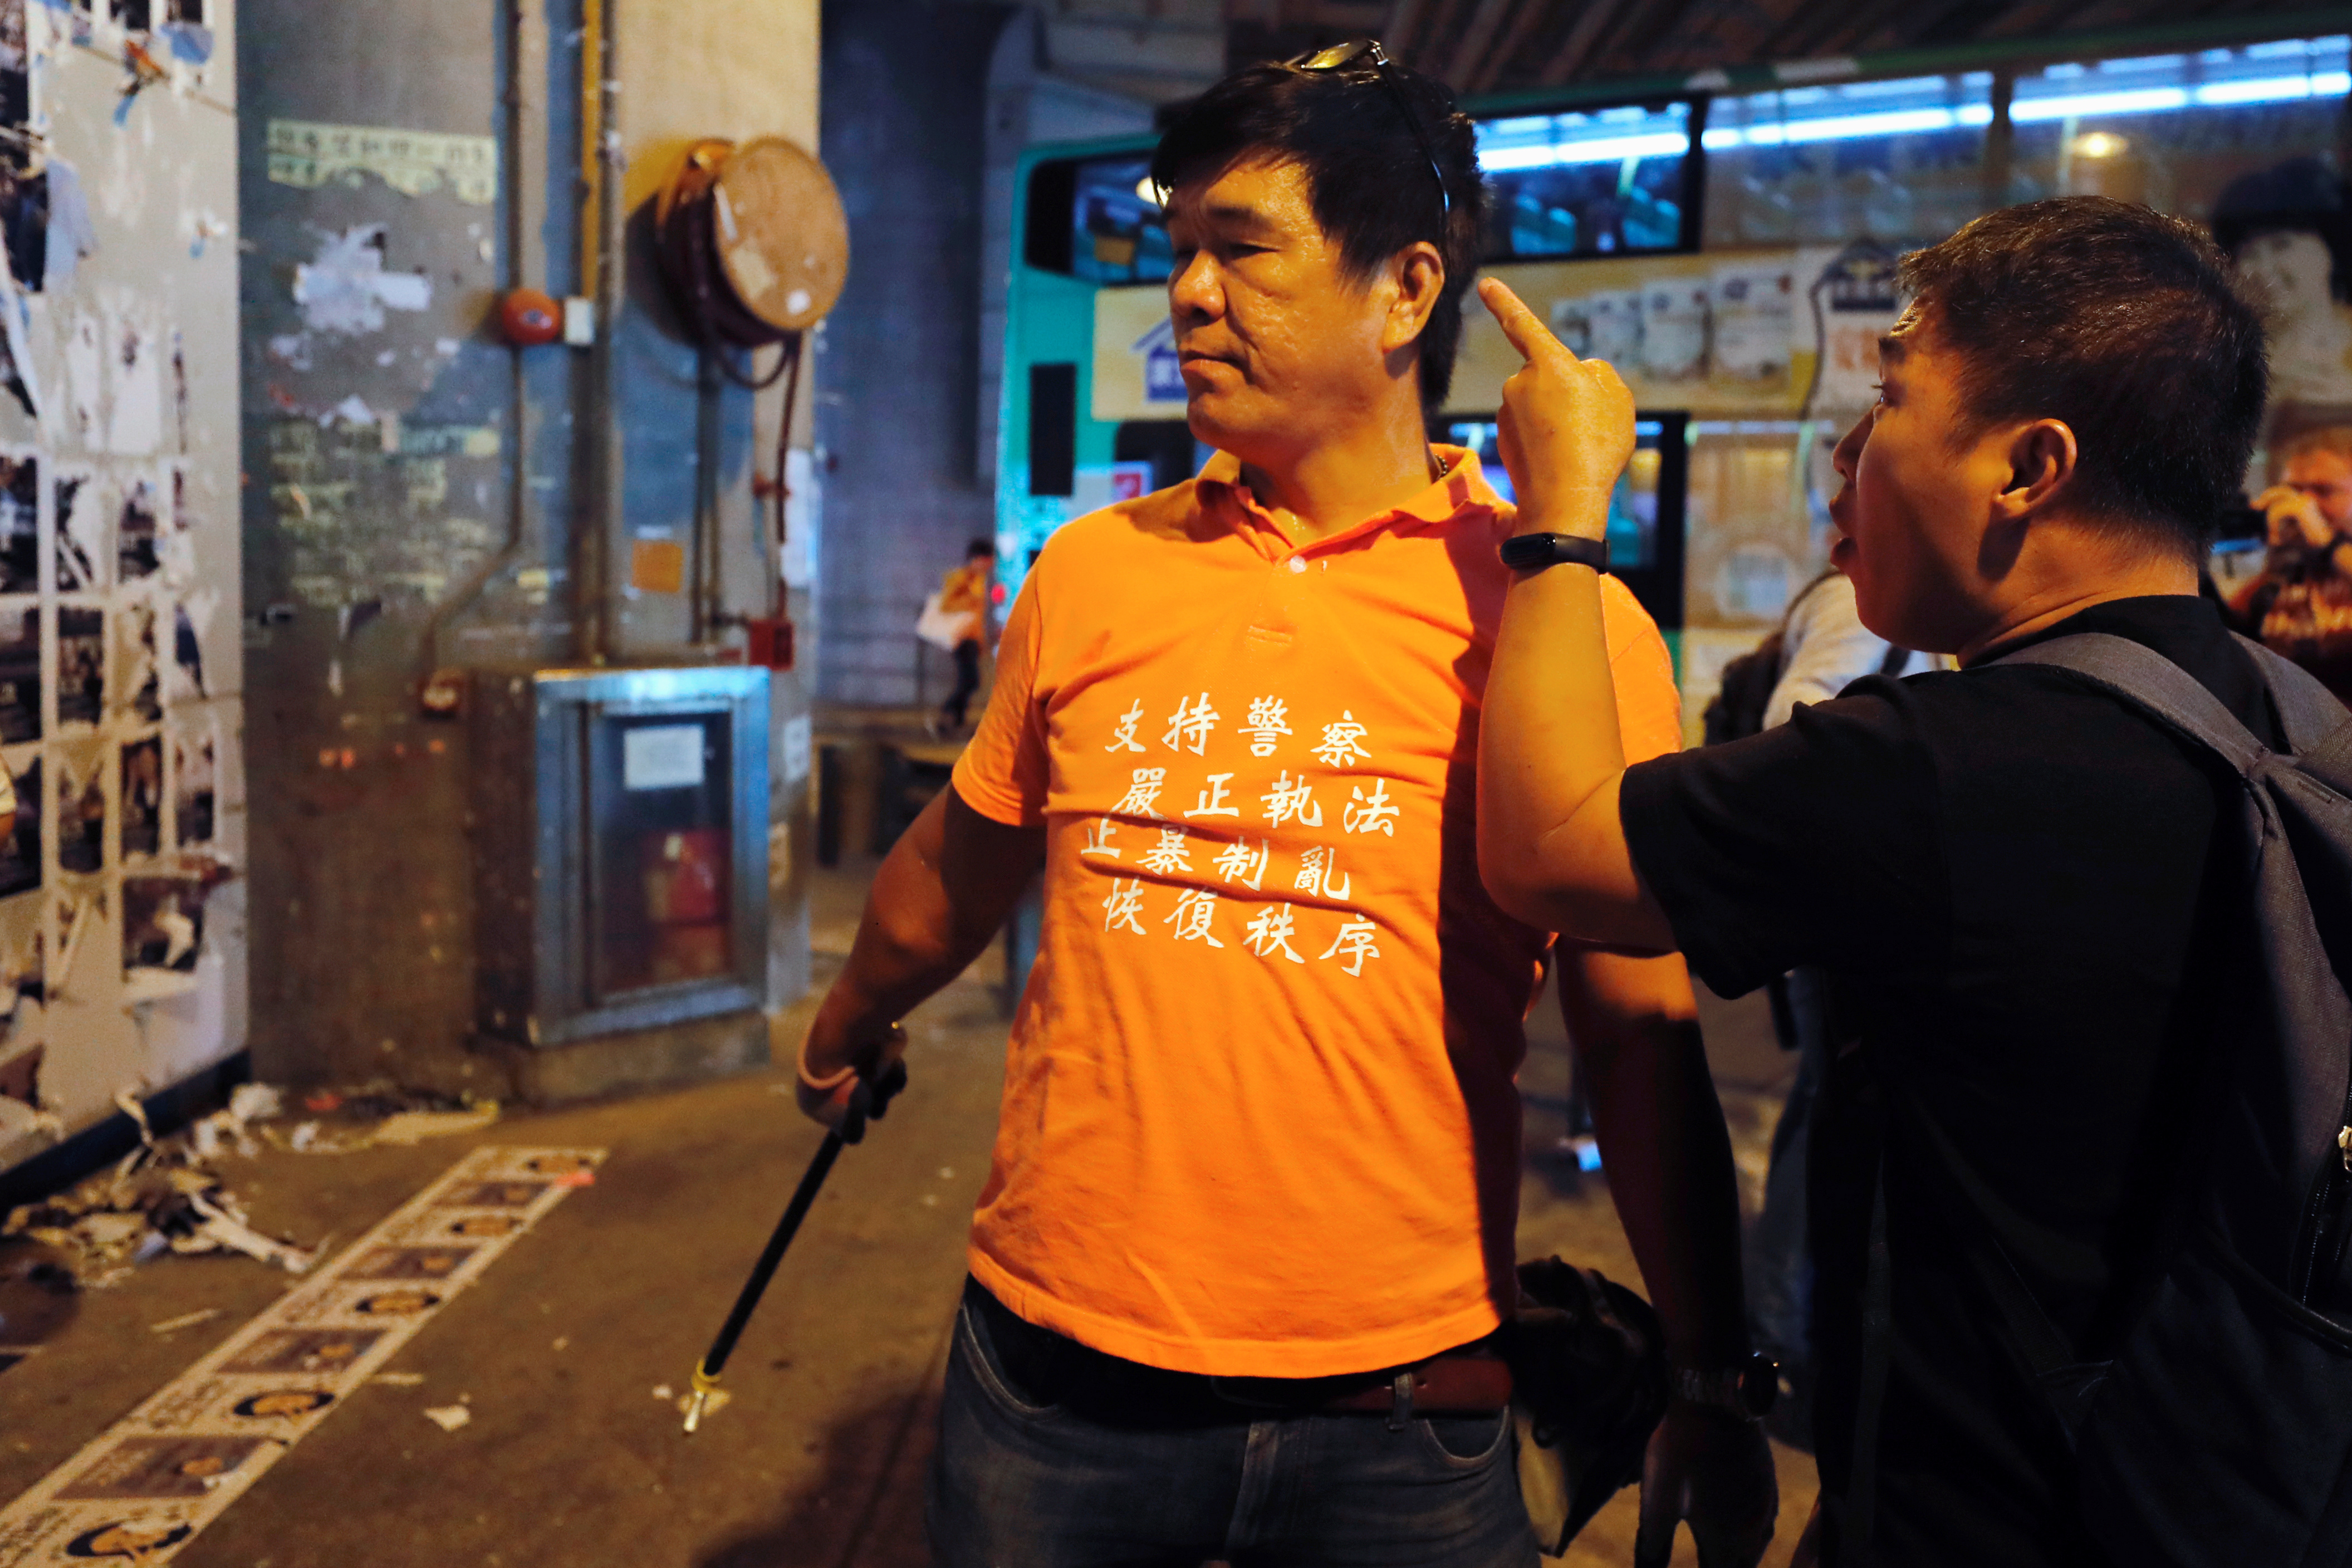 一名男子（右）指责一位穿着橙色上衣，正在清理元朗站附近的“连侬墙”的人士。-路透社-